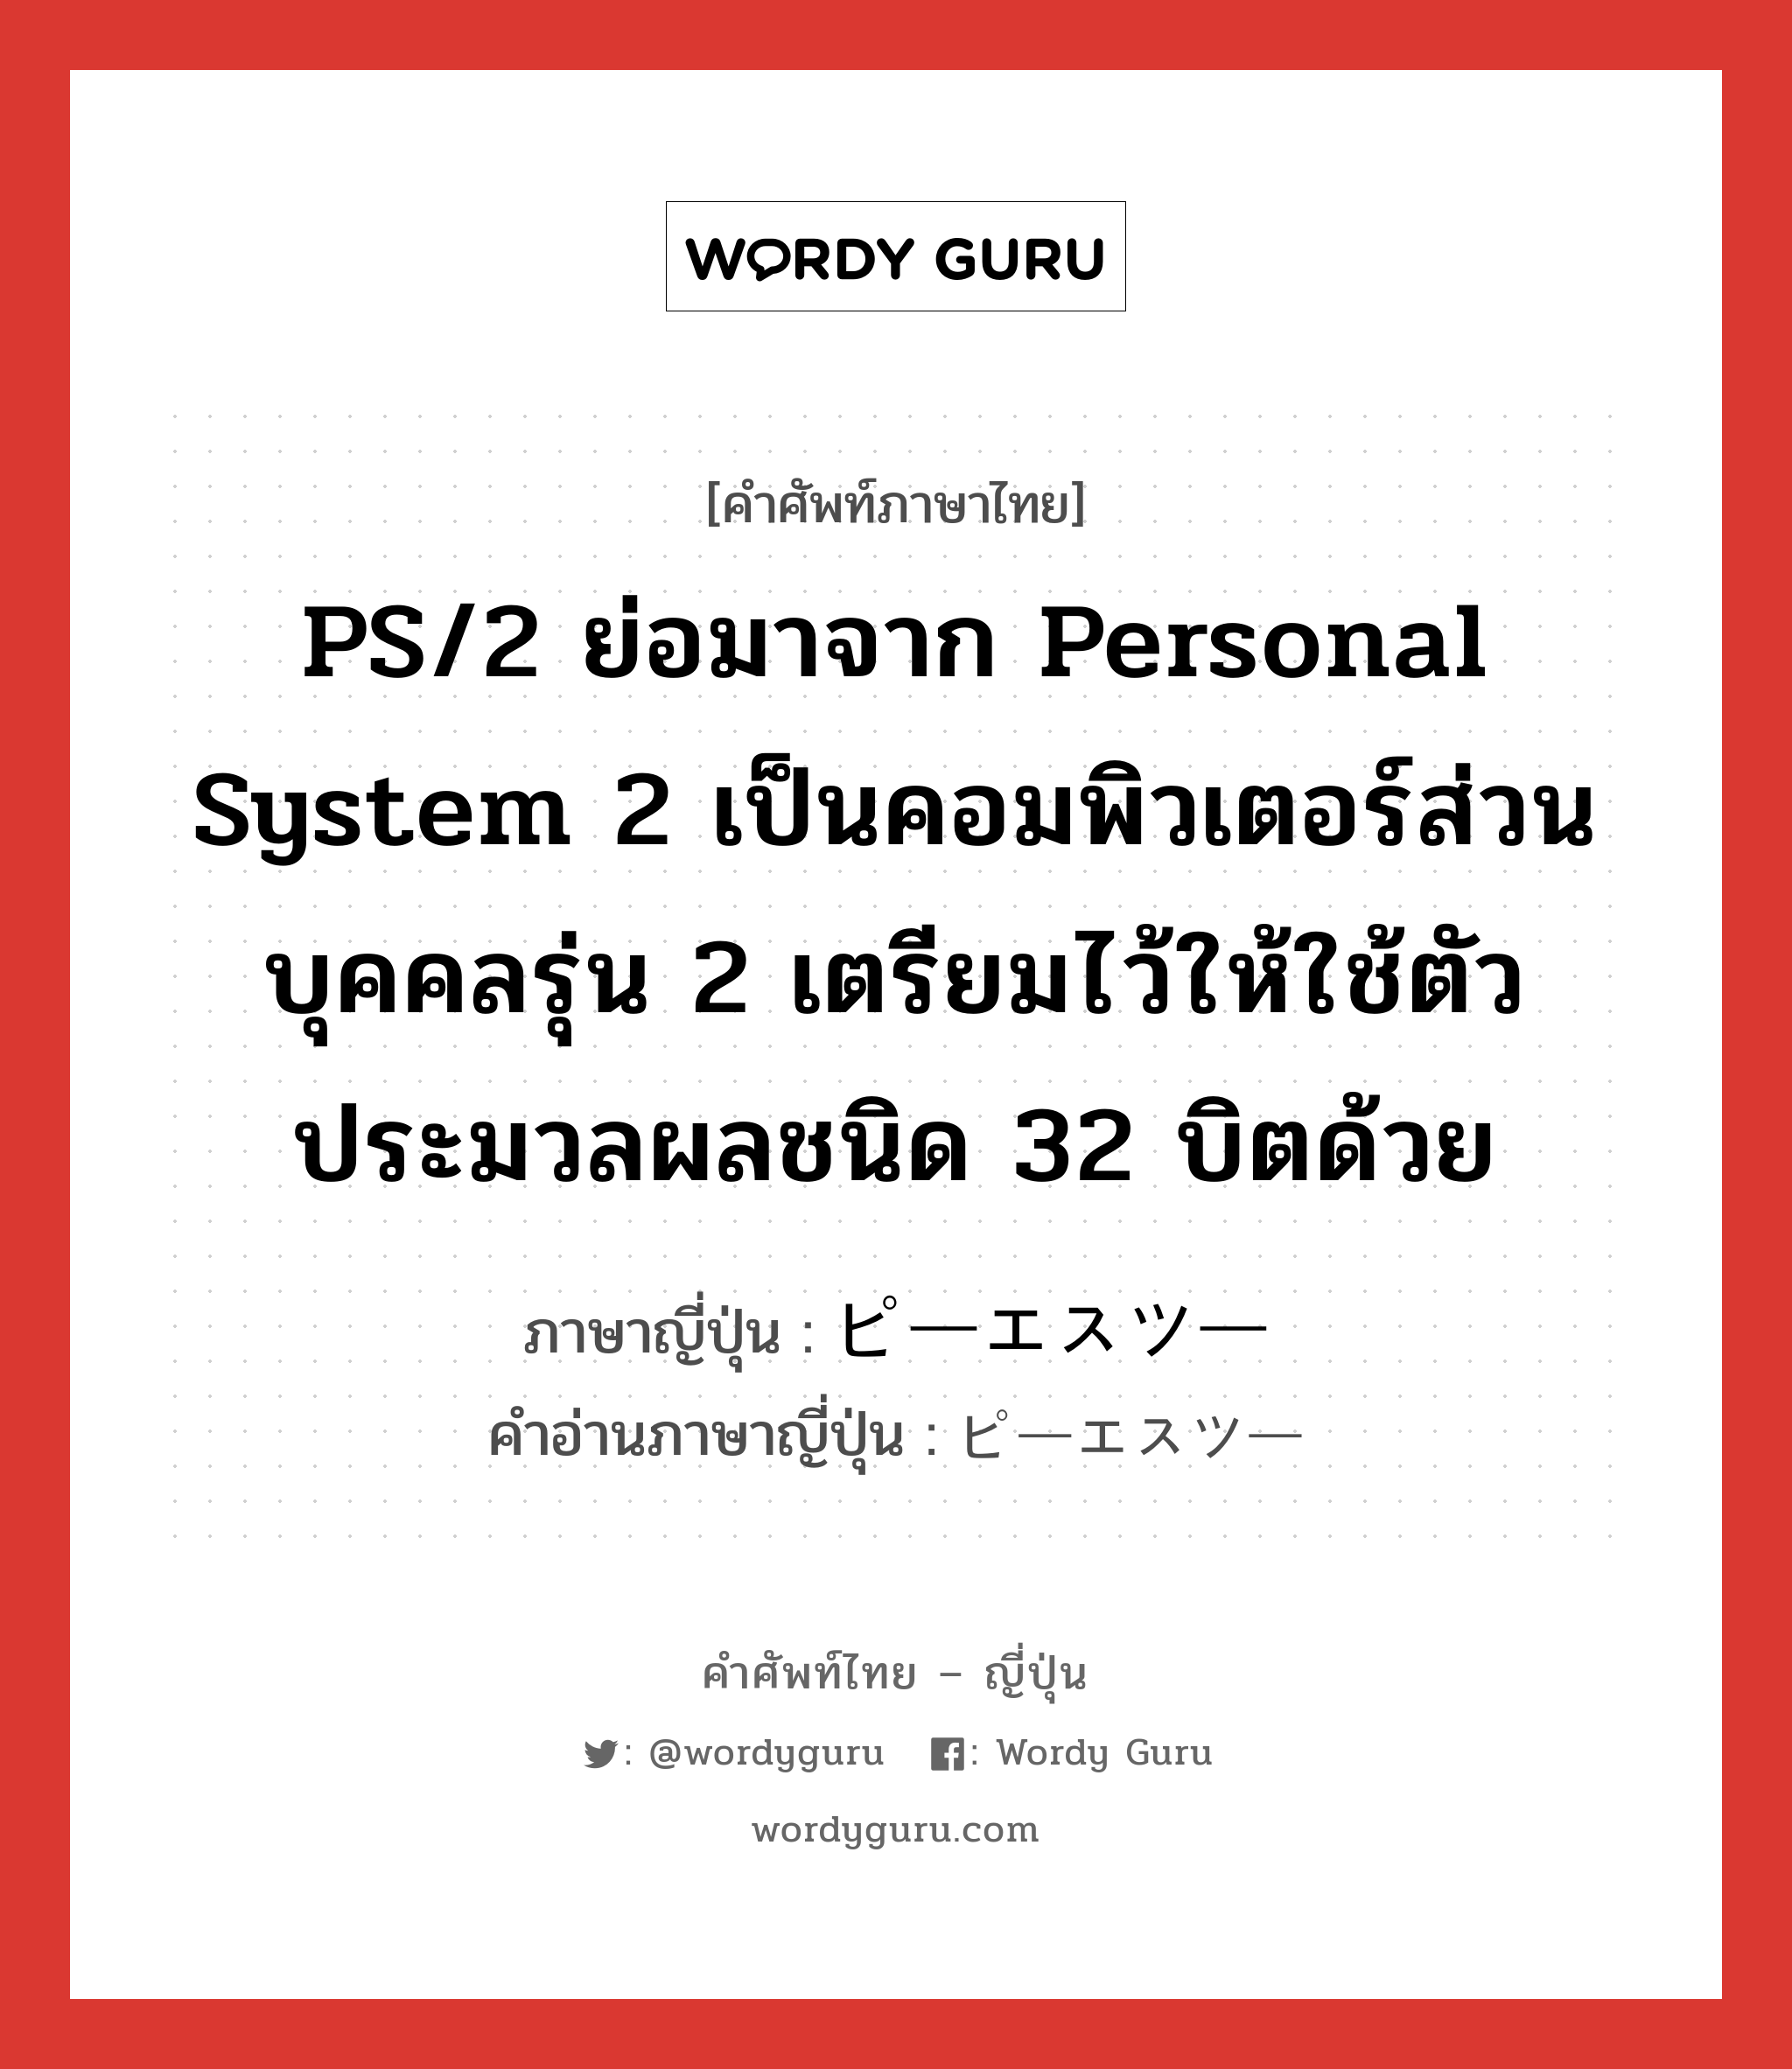 ピーエスツー ภาษาไทย?, คำศัพท์ภาษาไทย - ญี่ปุ่น ピーエスツー ภาษาญี่ปุ่น PS/2 ย่อมาจาก personal system 2 เป็นคอมพิวเตอร์ส่วนบุคคลรุ่น 2 เตรียมไว้ให้ใช้ตัวประมวลผลชนิด 32 บิตด้วย คำอ่านภาษาญี่ปุ่น ピーエスツー หมวด n หมวด n